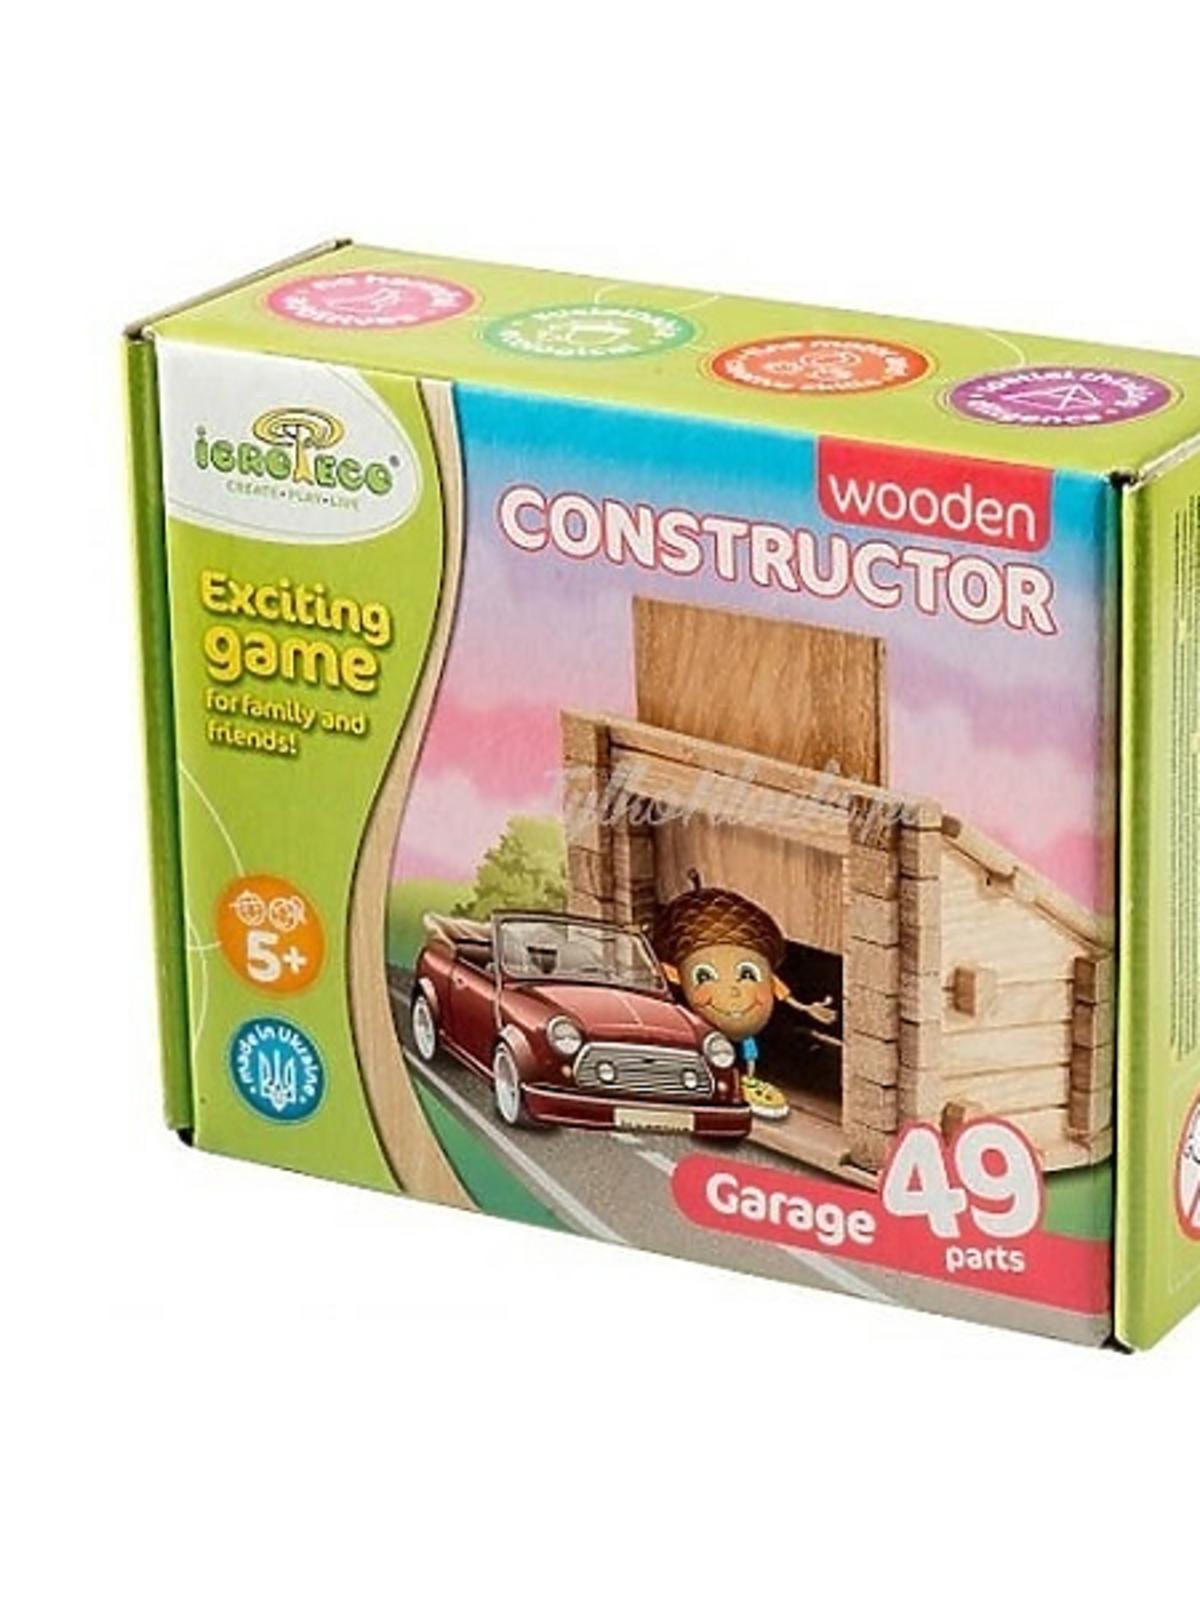 Igroteco Wooden Constructor Garaż - katalog produktów dla dzieci na Babyonlinepl.jpg